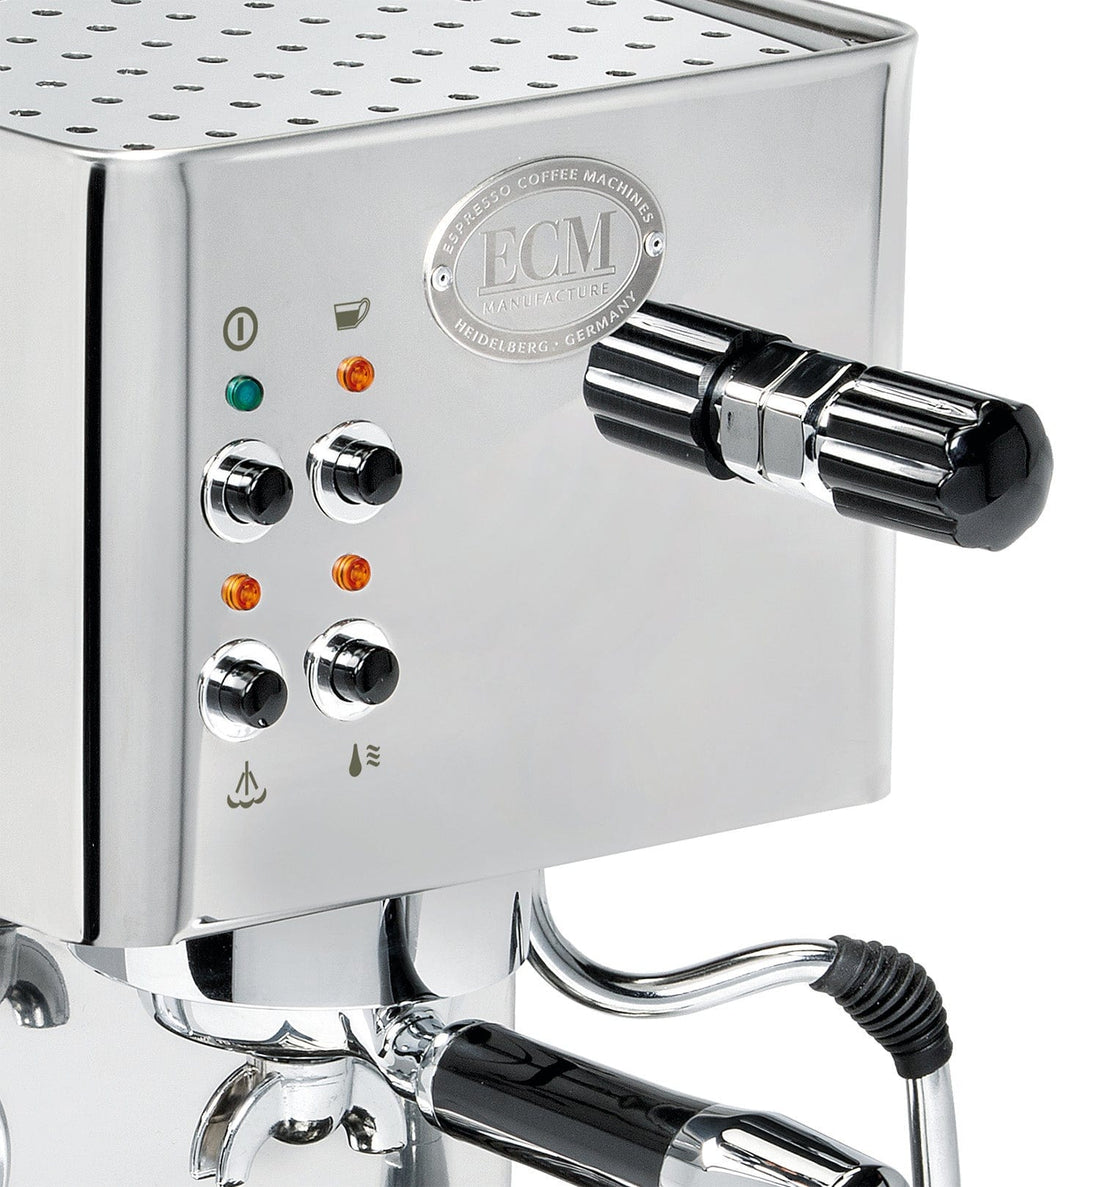 ECM Casa V Coffee Machine